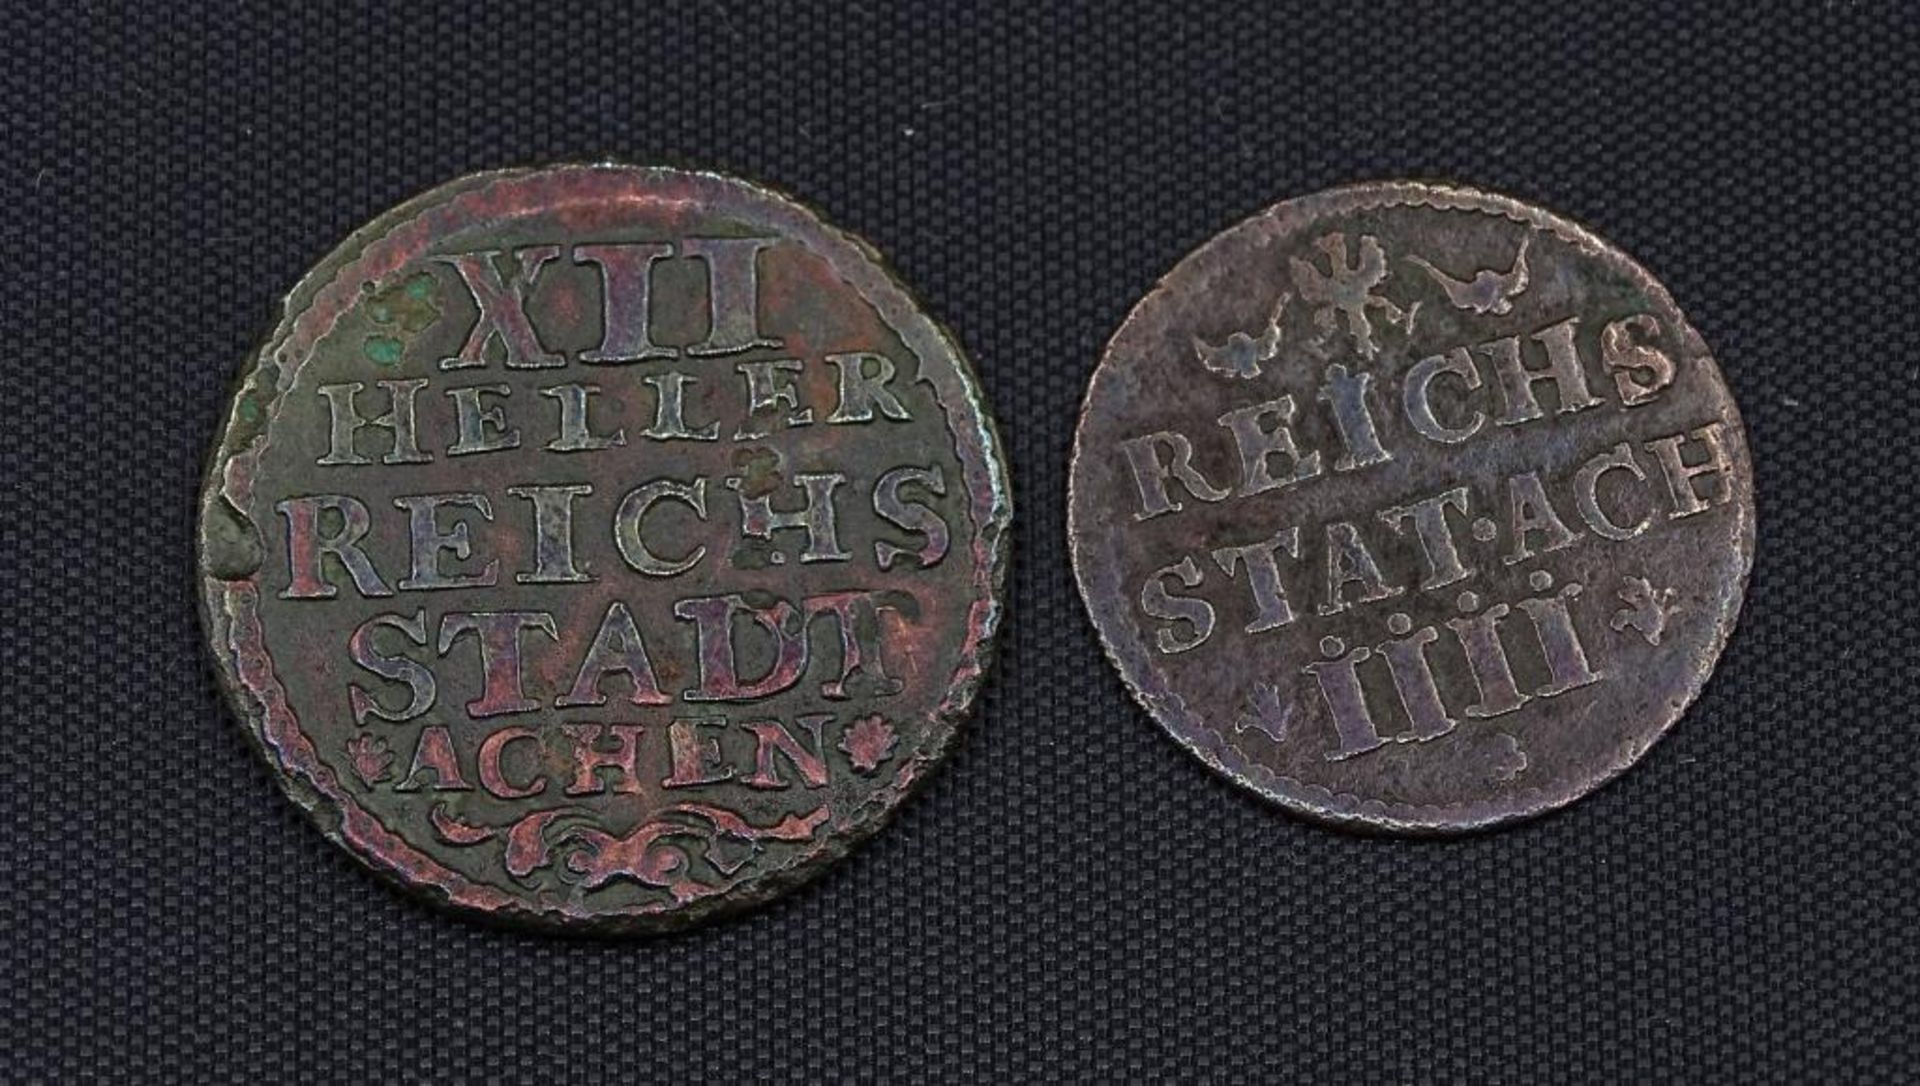 2x Kupfermünzen,Aachen 12 Heller und 4 Heller 1759 u. 185 - Bild 2 aus 2